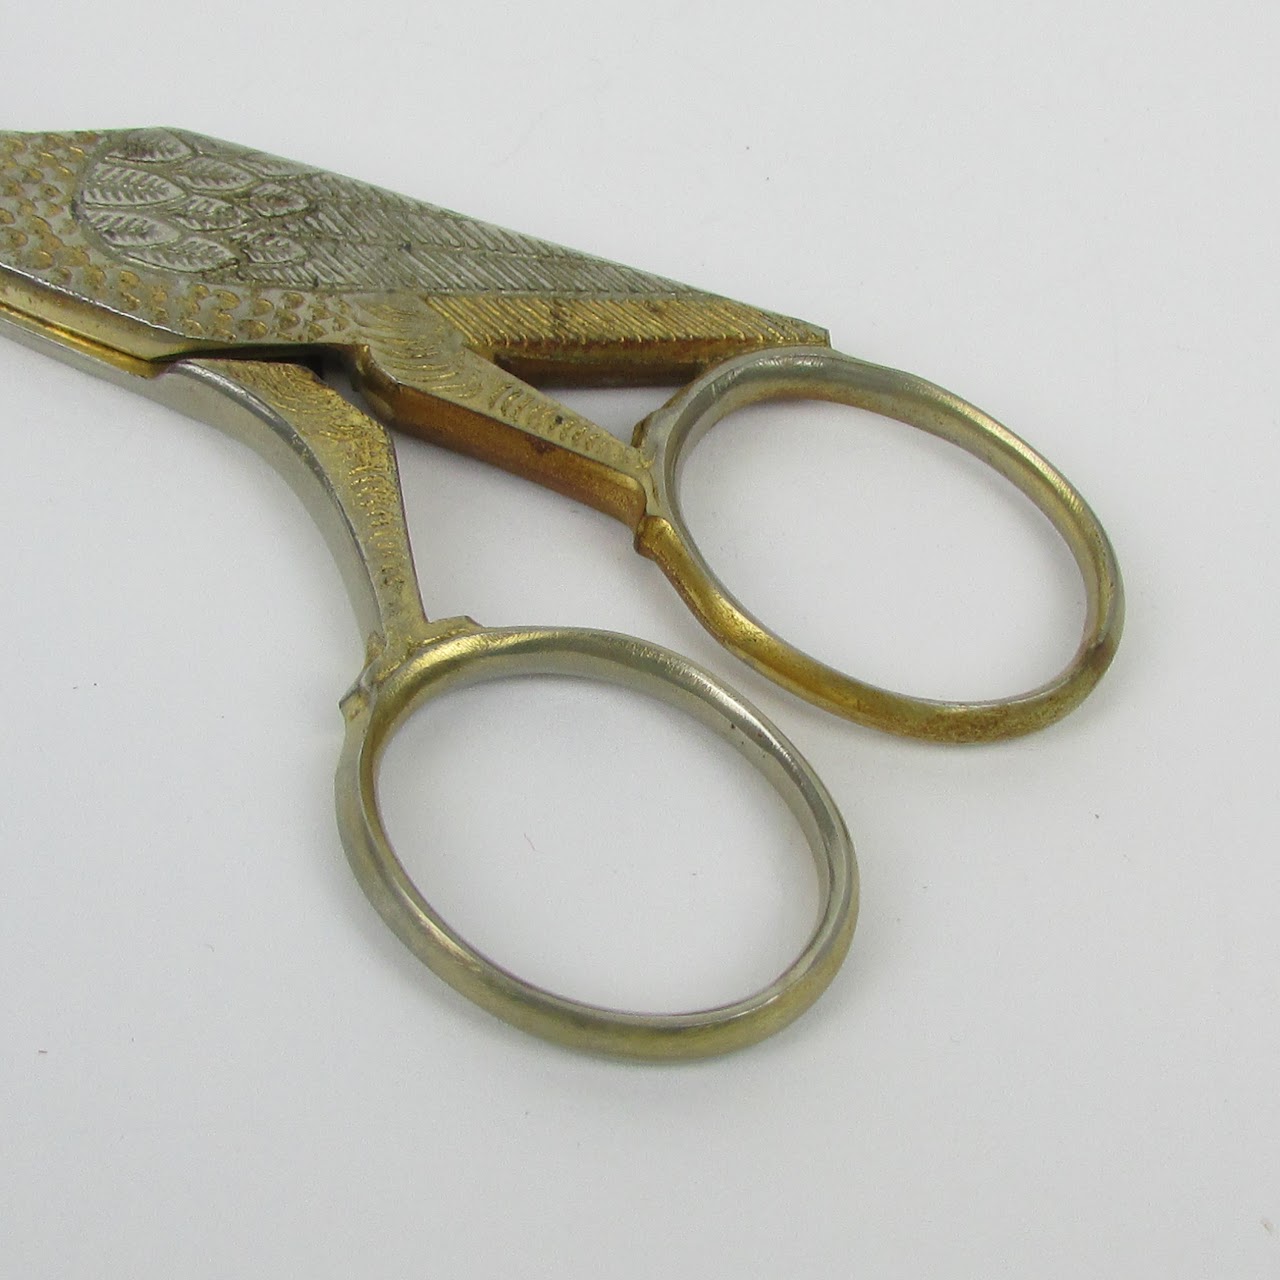 stork embroidery scissors – Benjamin Soap Co.